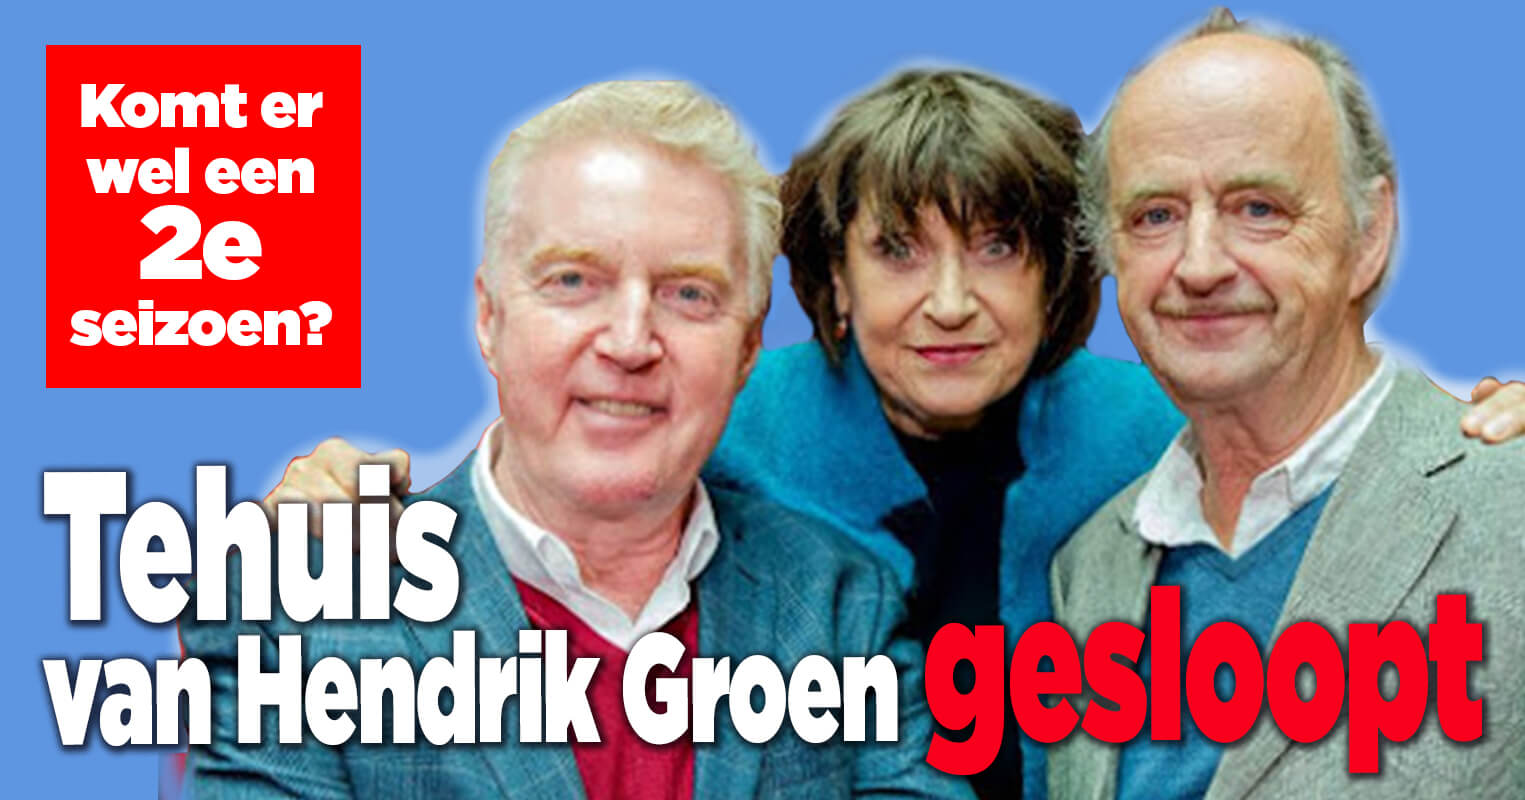 Tehuis van Hendrik Groen gesloopt! Probleem voor 2e seizoen?